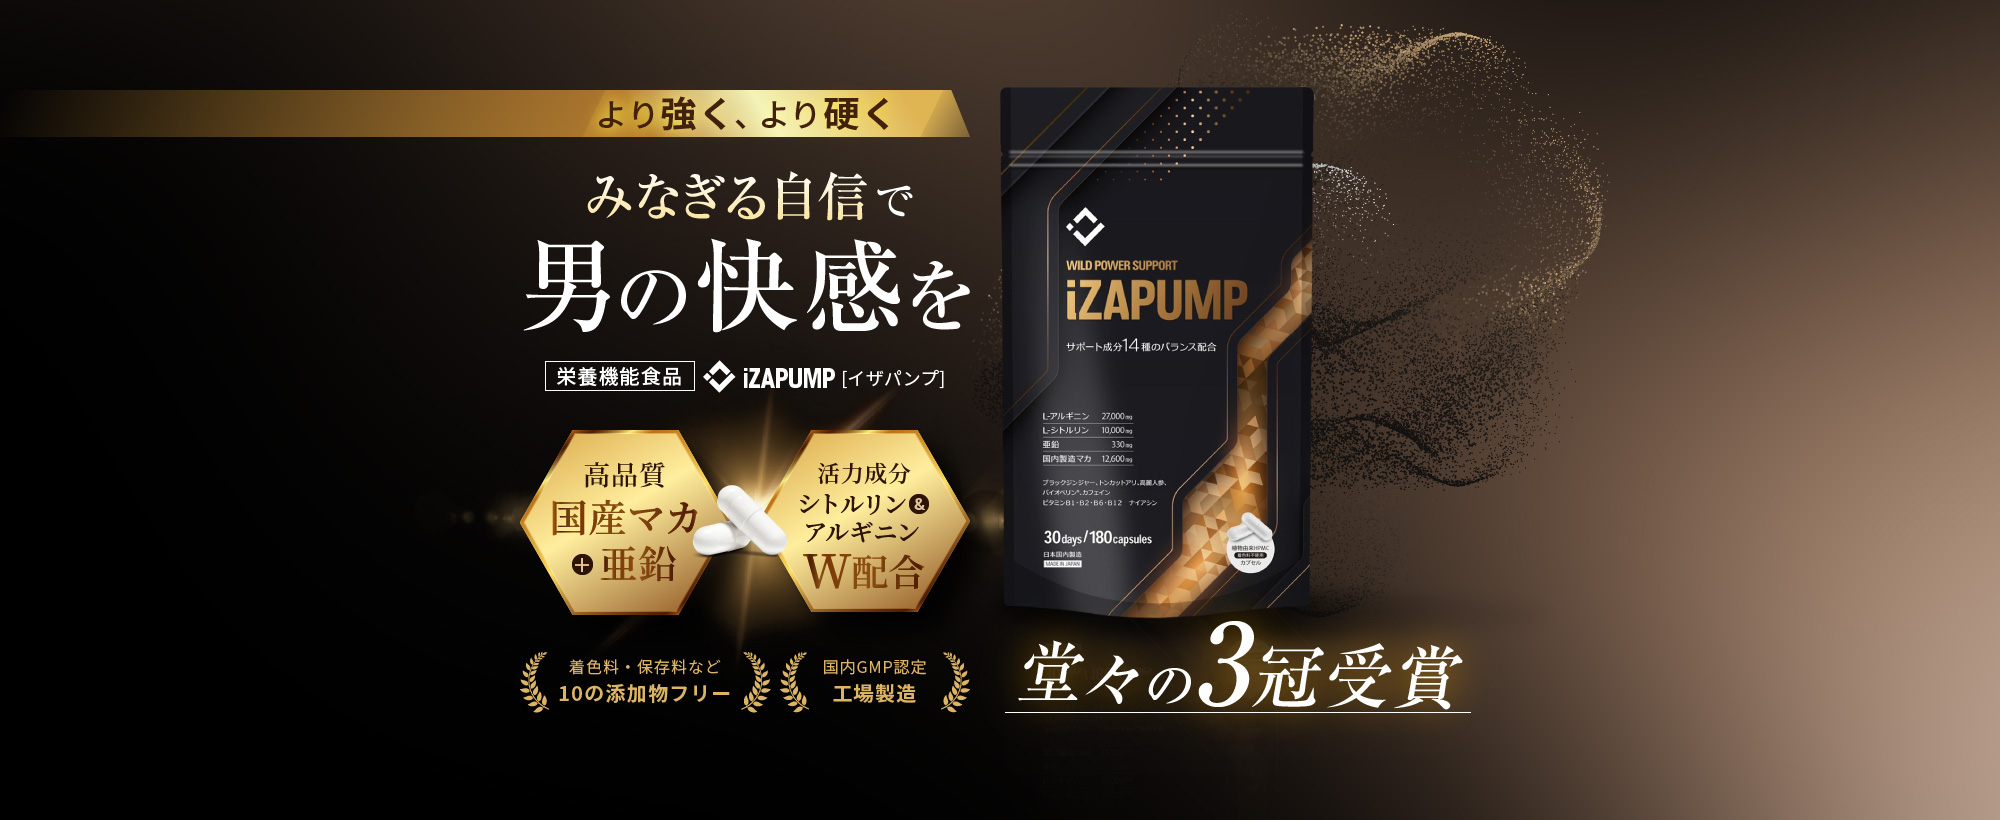 より強く、より硬く みなぎる自信で男の快感を 栄養機能食品 iZAPUMP[イザパンプ]